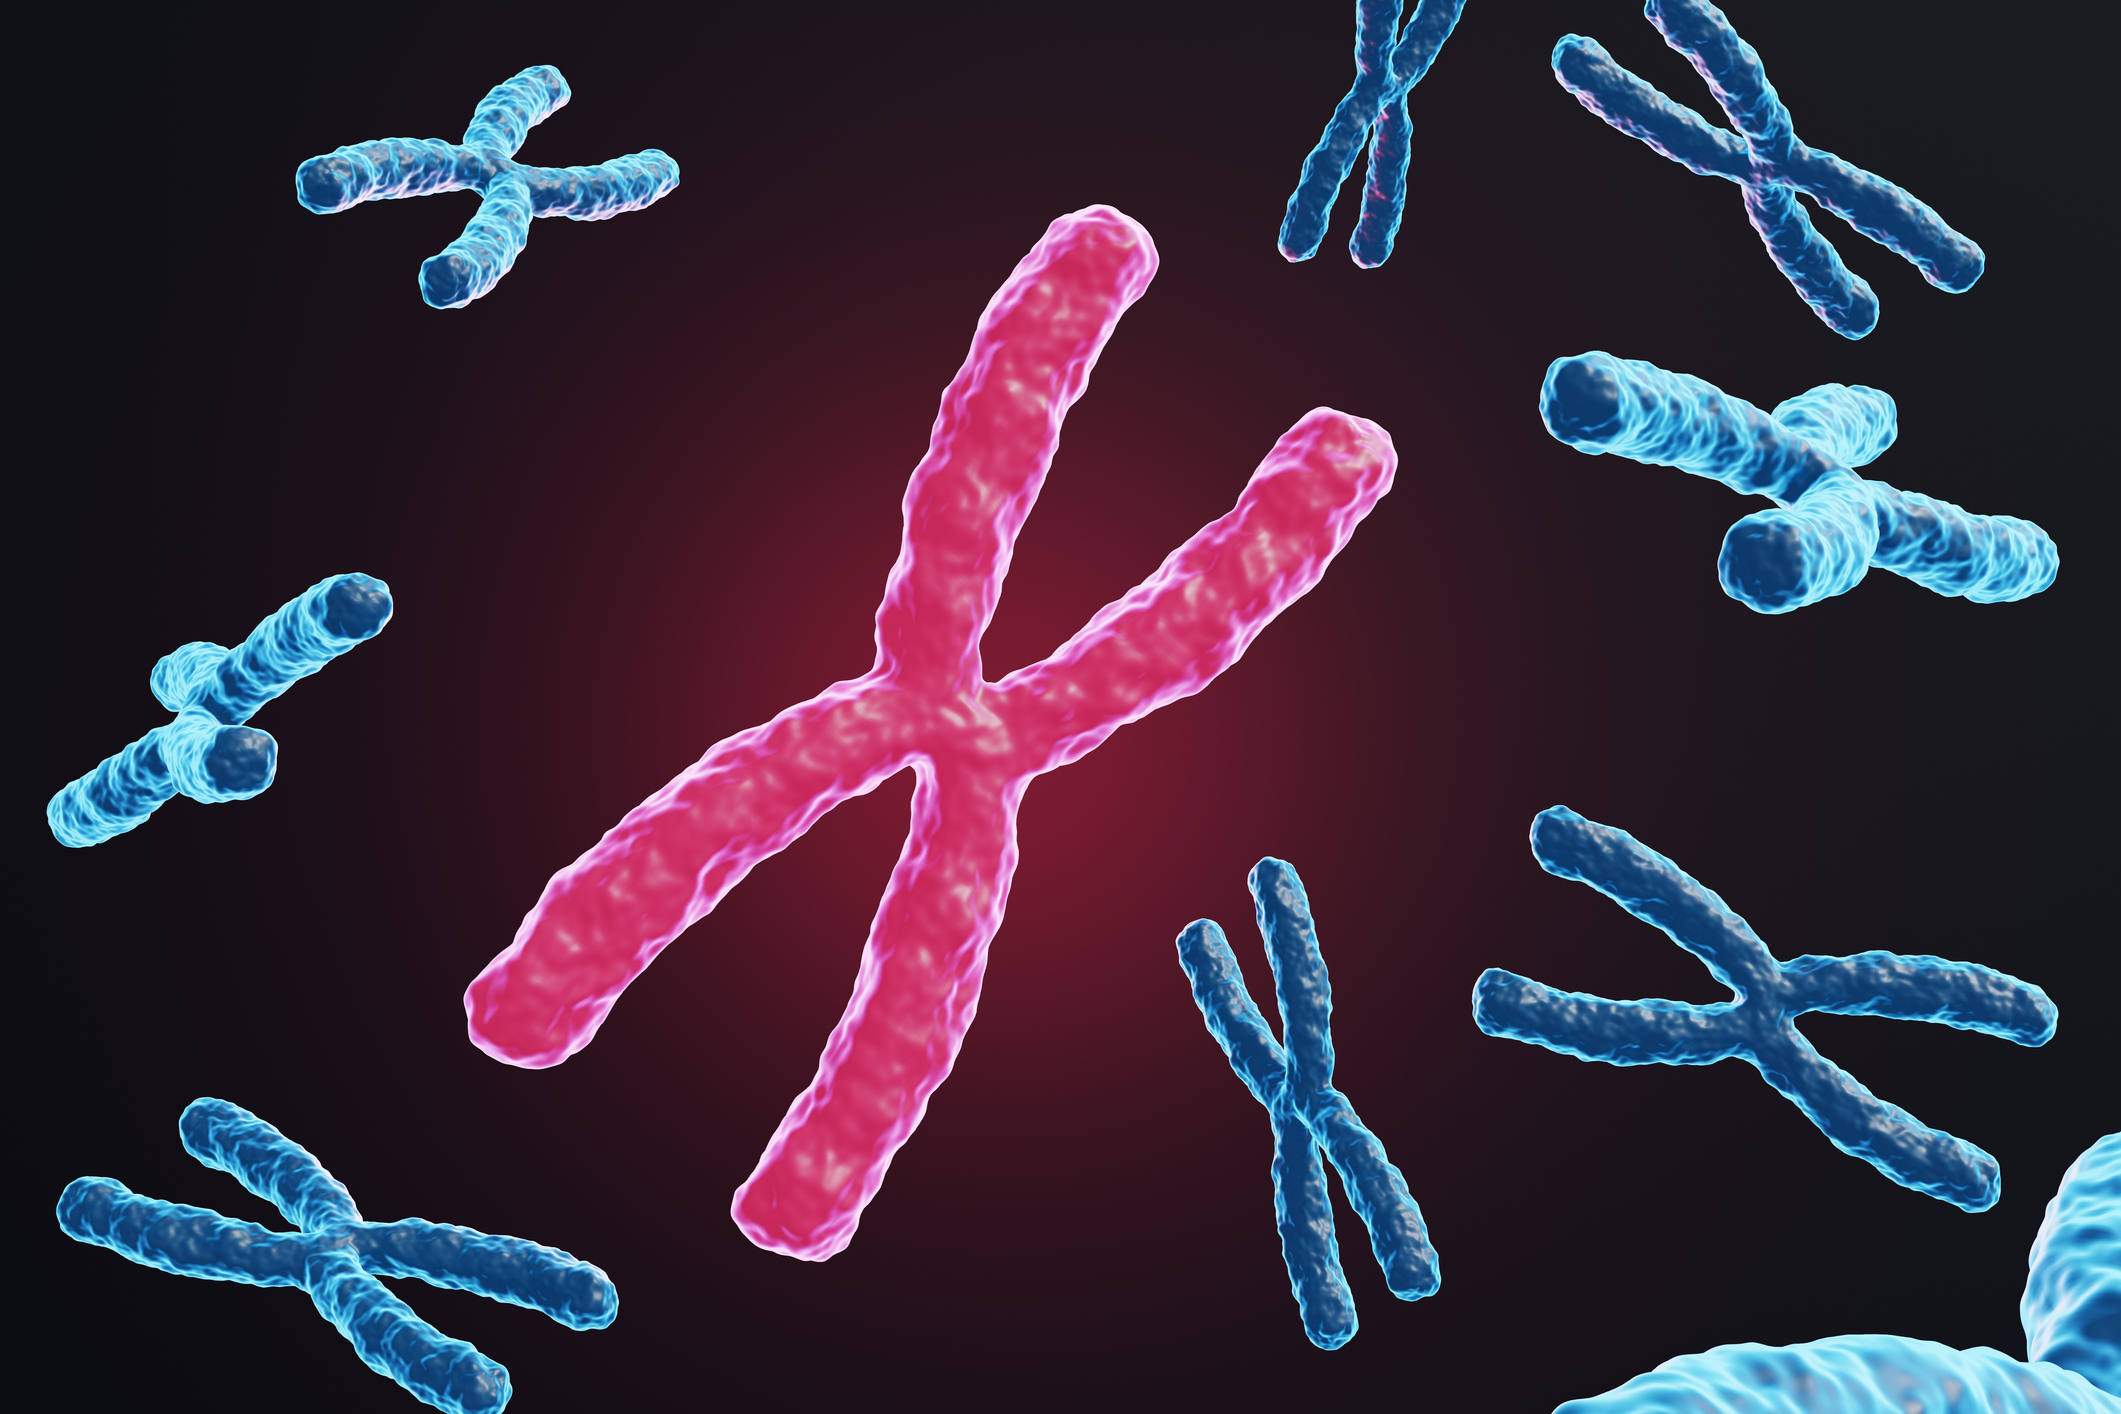 estudio-revela-por-que-las-mujeres-son-mas-propensas-a-las-enfermedades-autoinmunes-cromosoma